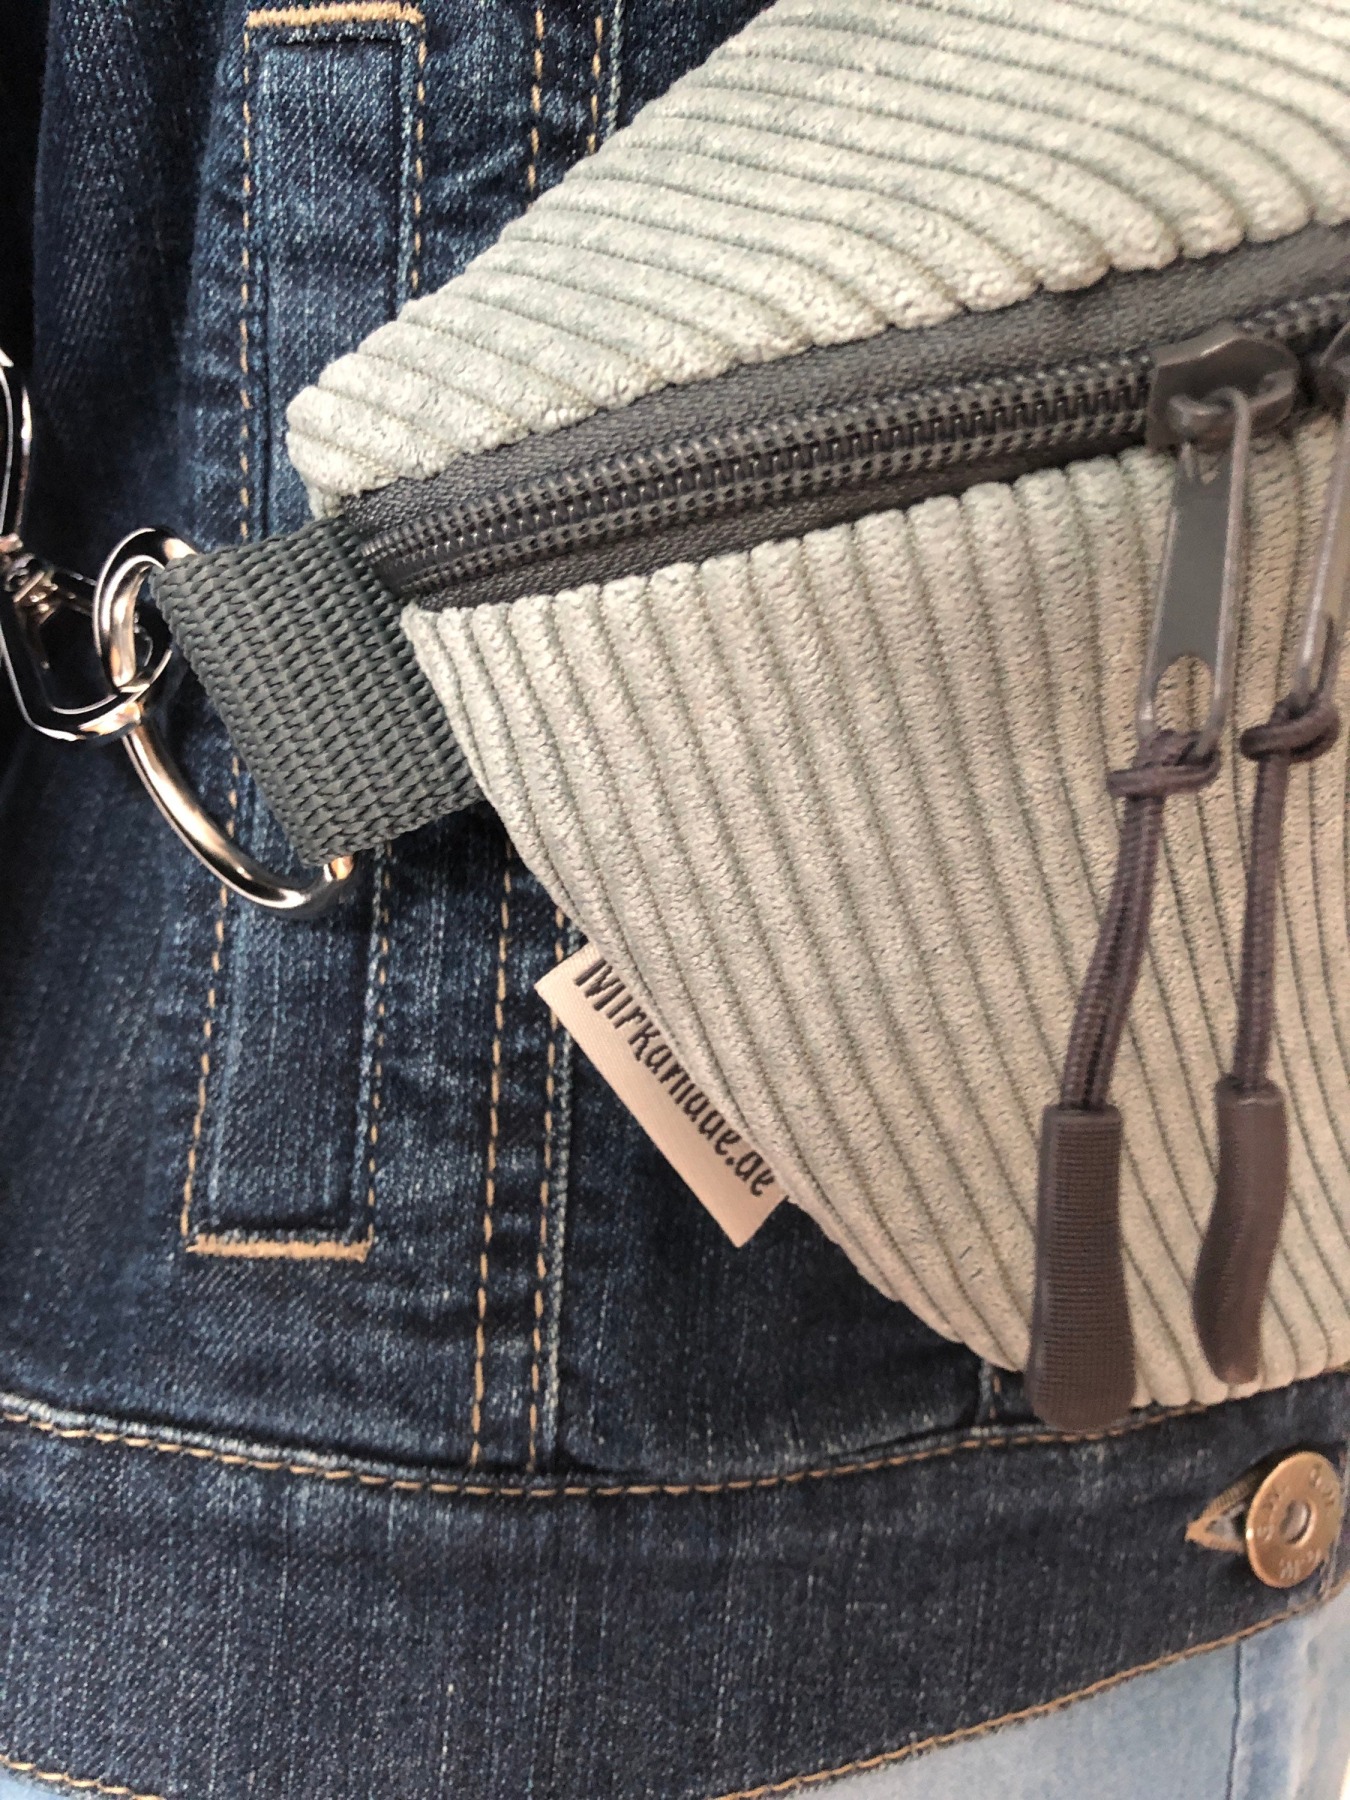 Bauchtasche XL Crossbag Cord mint dunkelgrauer Reißverschluss mit Leogurt grau Tasche Cord mint